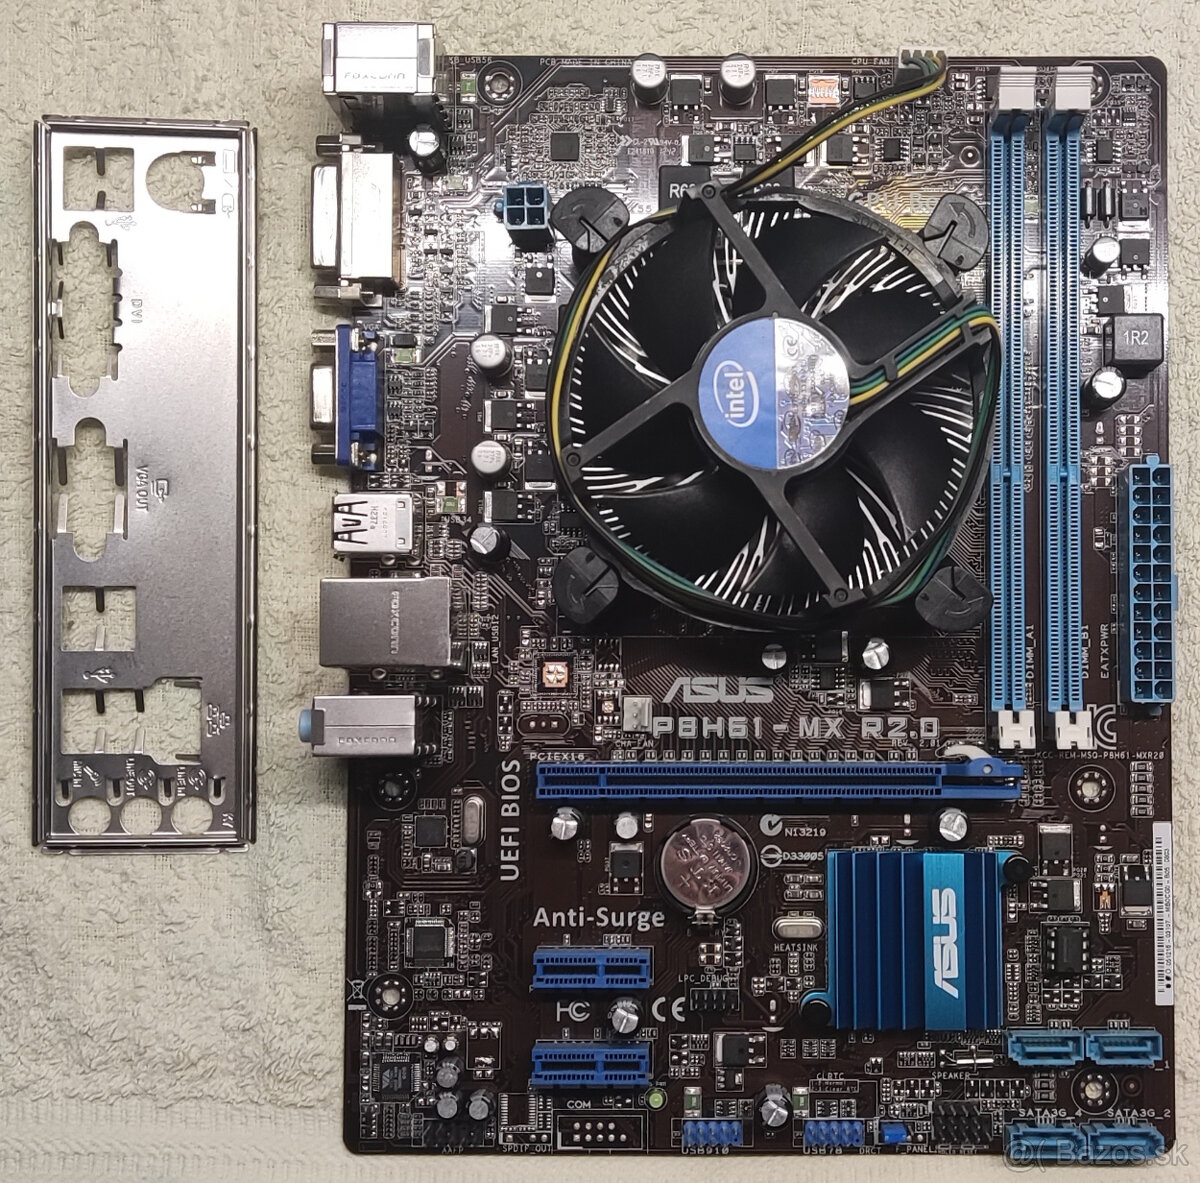 Asus P8H61-MX R2.0 + Intel Pentium G2020 + Intel Cooler